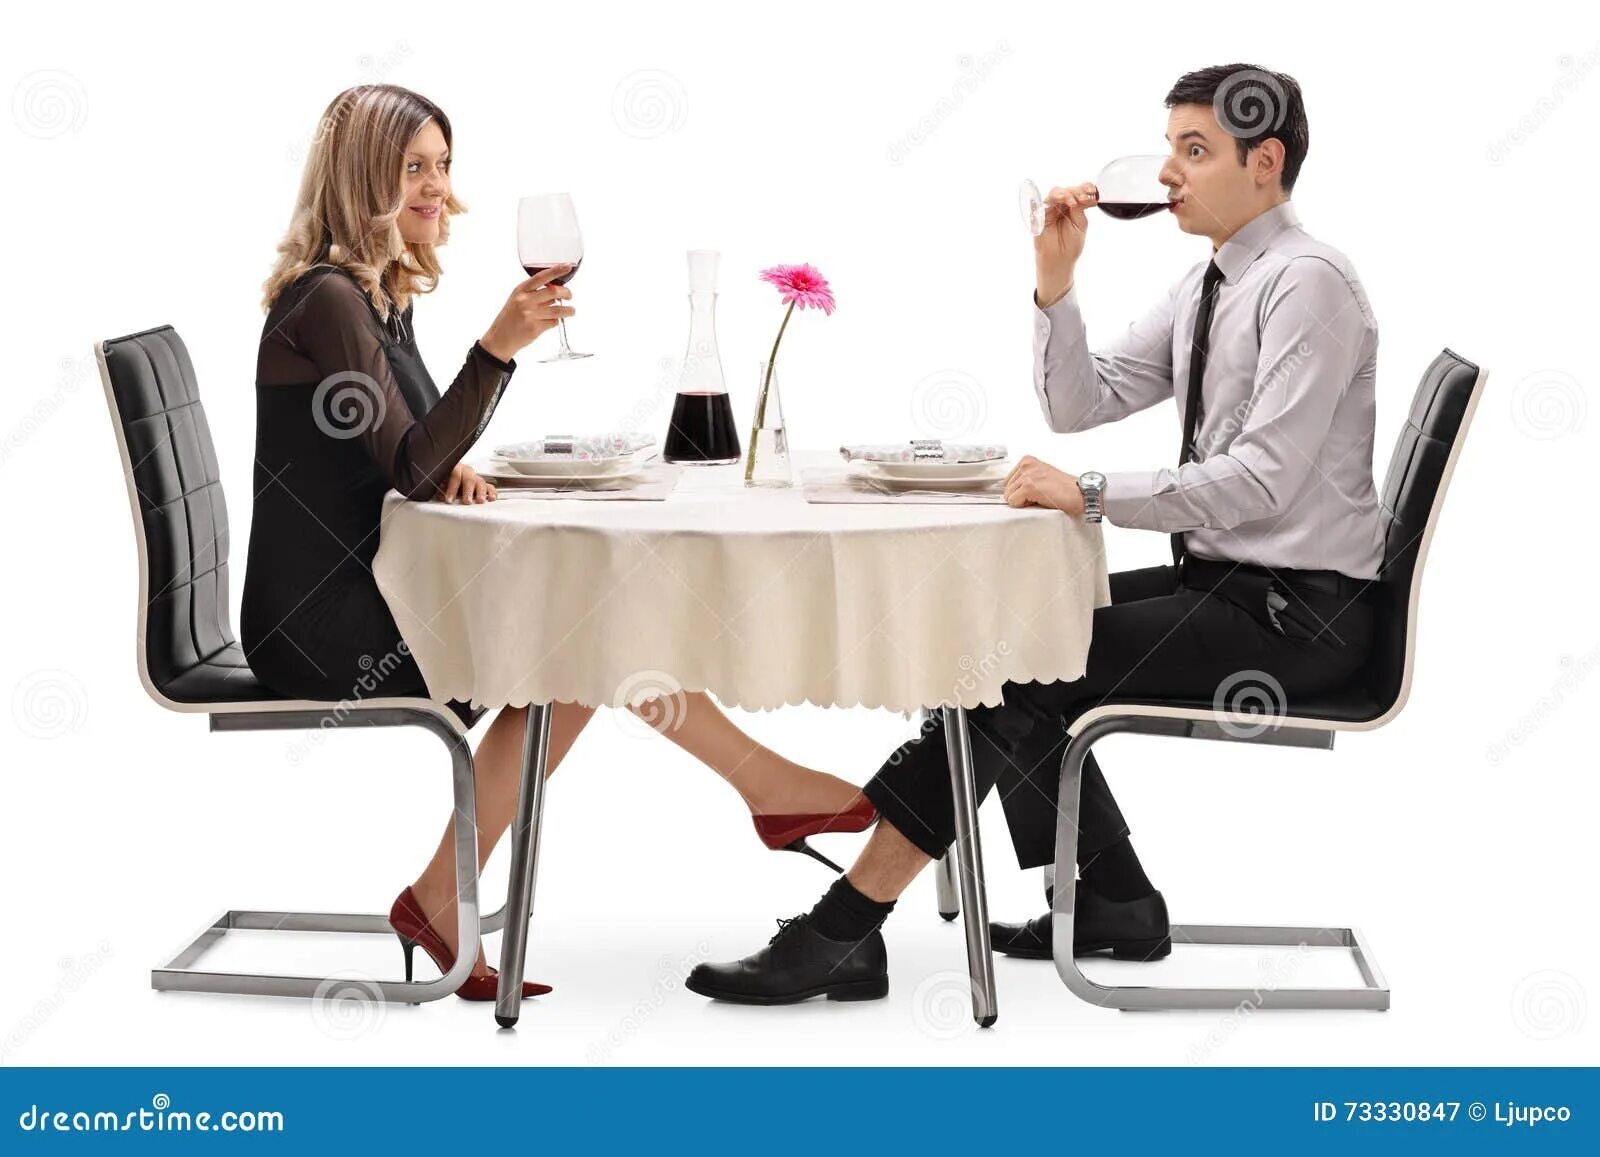 Мужчина под столом. Разговор под столом. Парень под столом. Белый человек под столом.